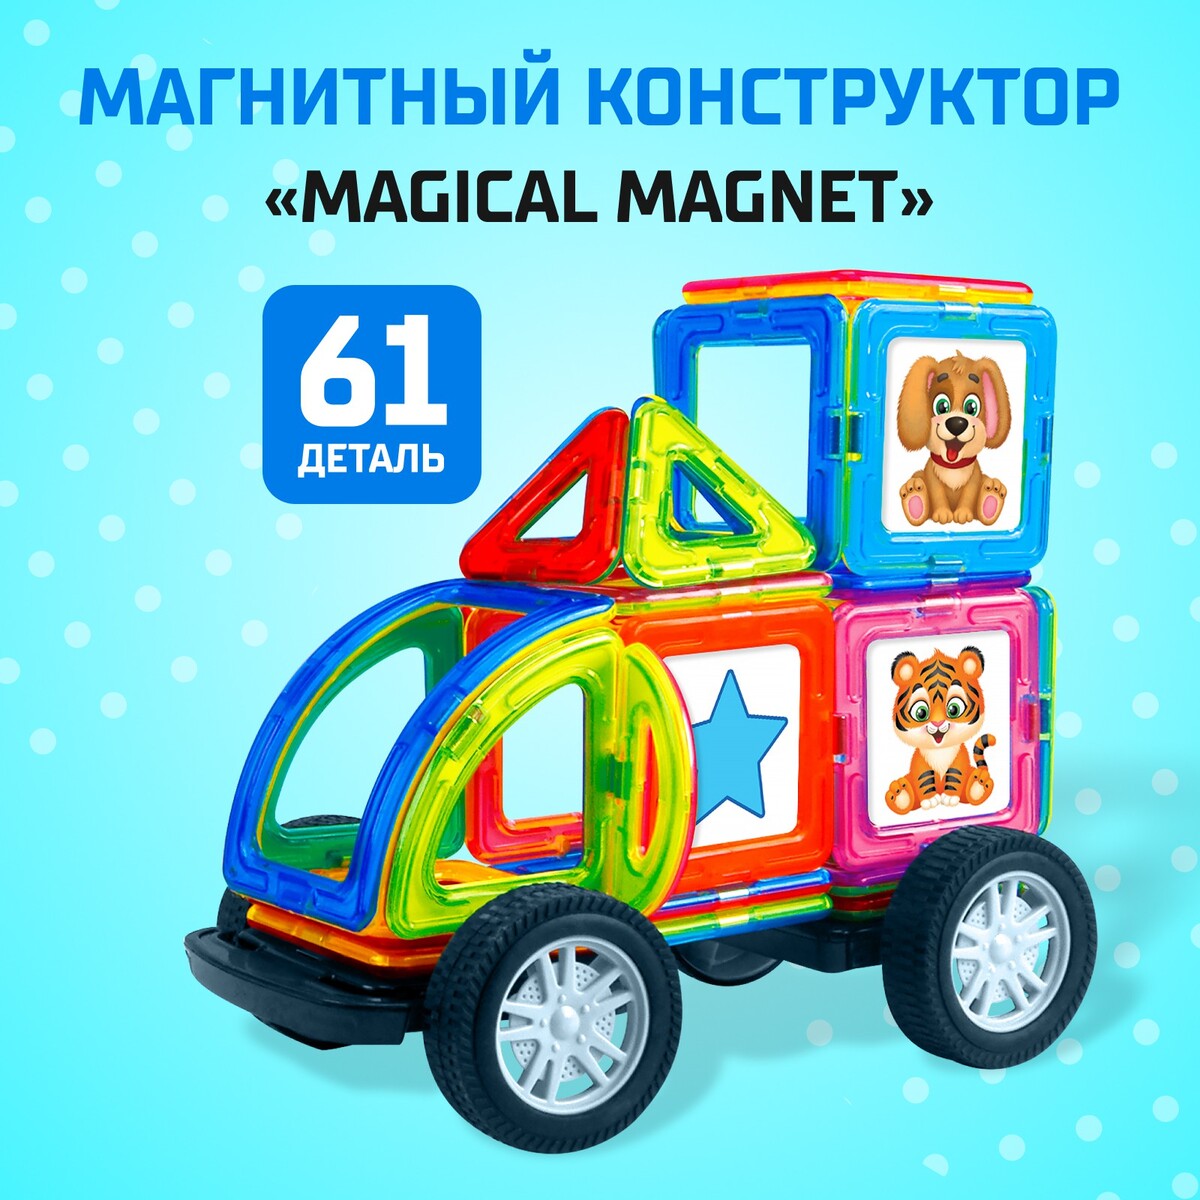 Магнитный конструктор magical magnet, 61 деталь, детали матовые магнитный конструктор magical magnet 34 детали детали матовые